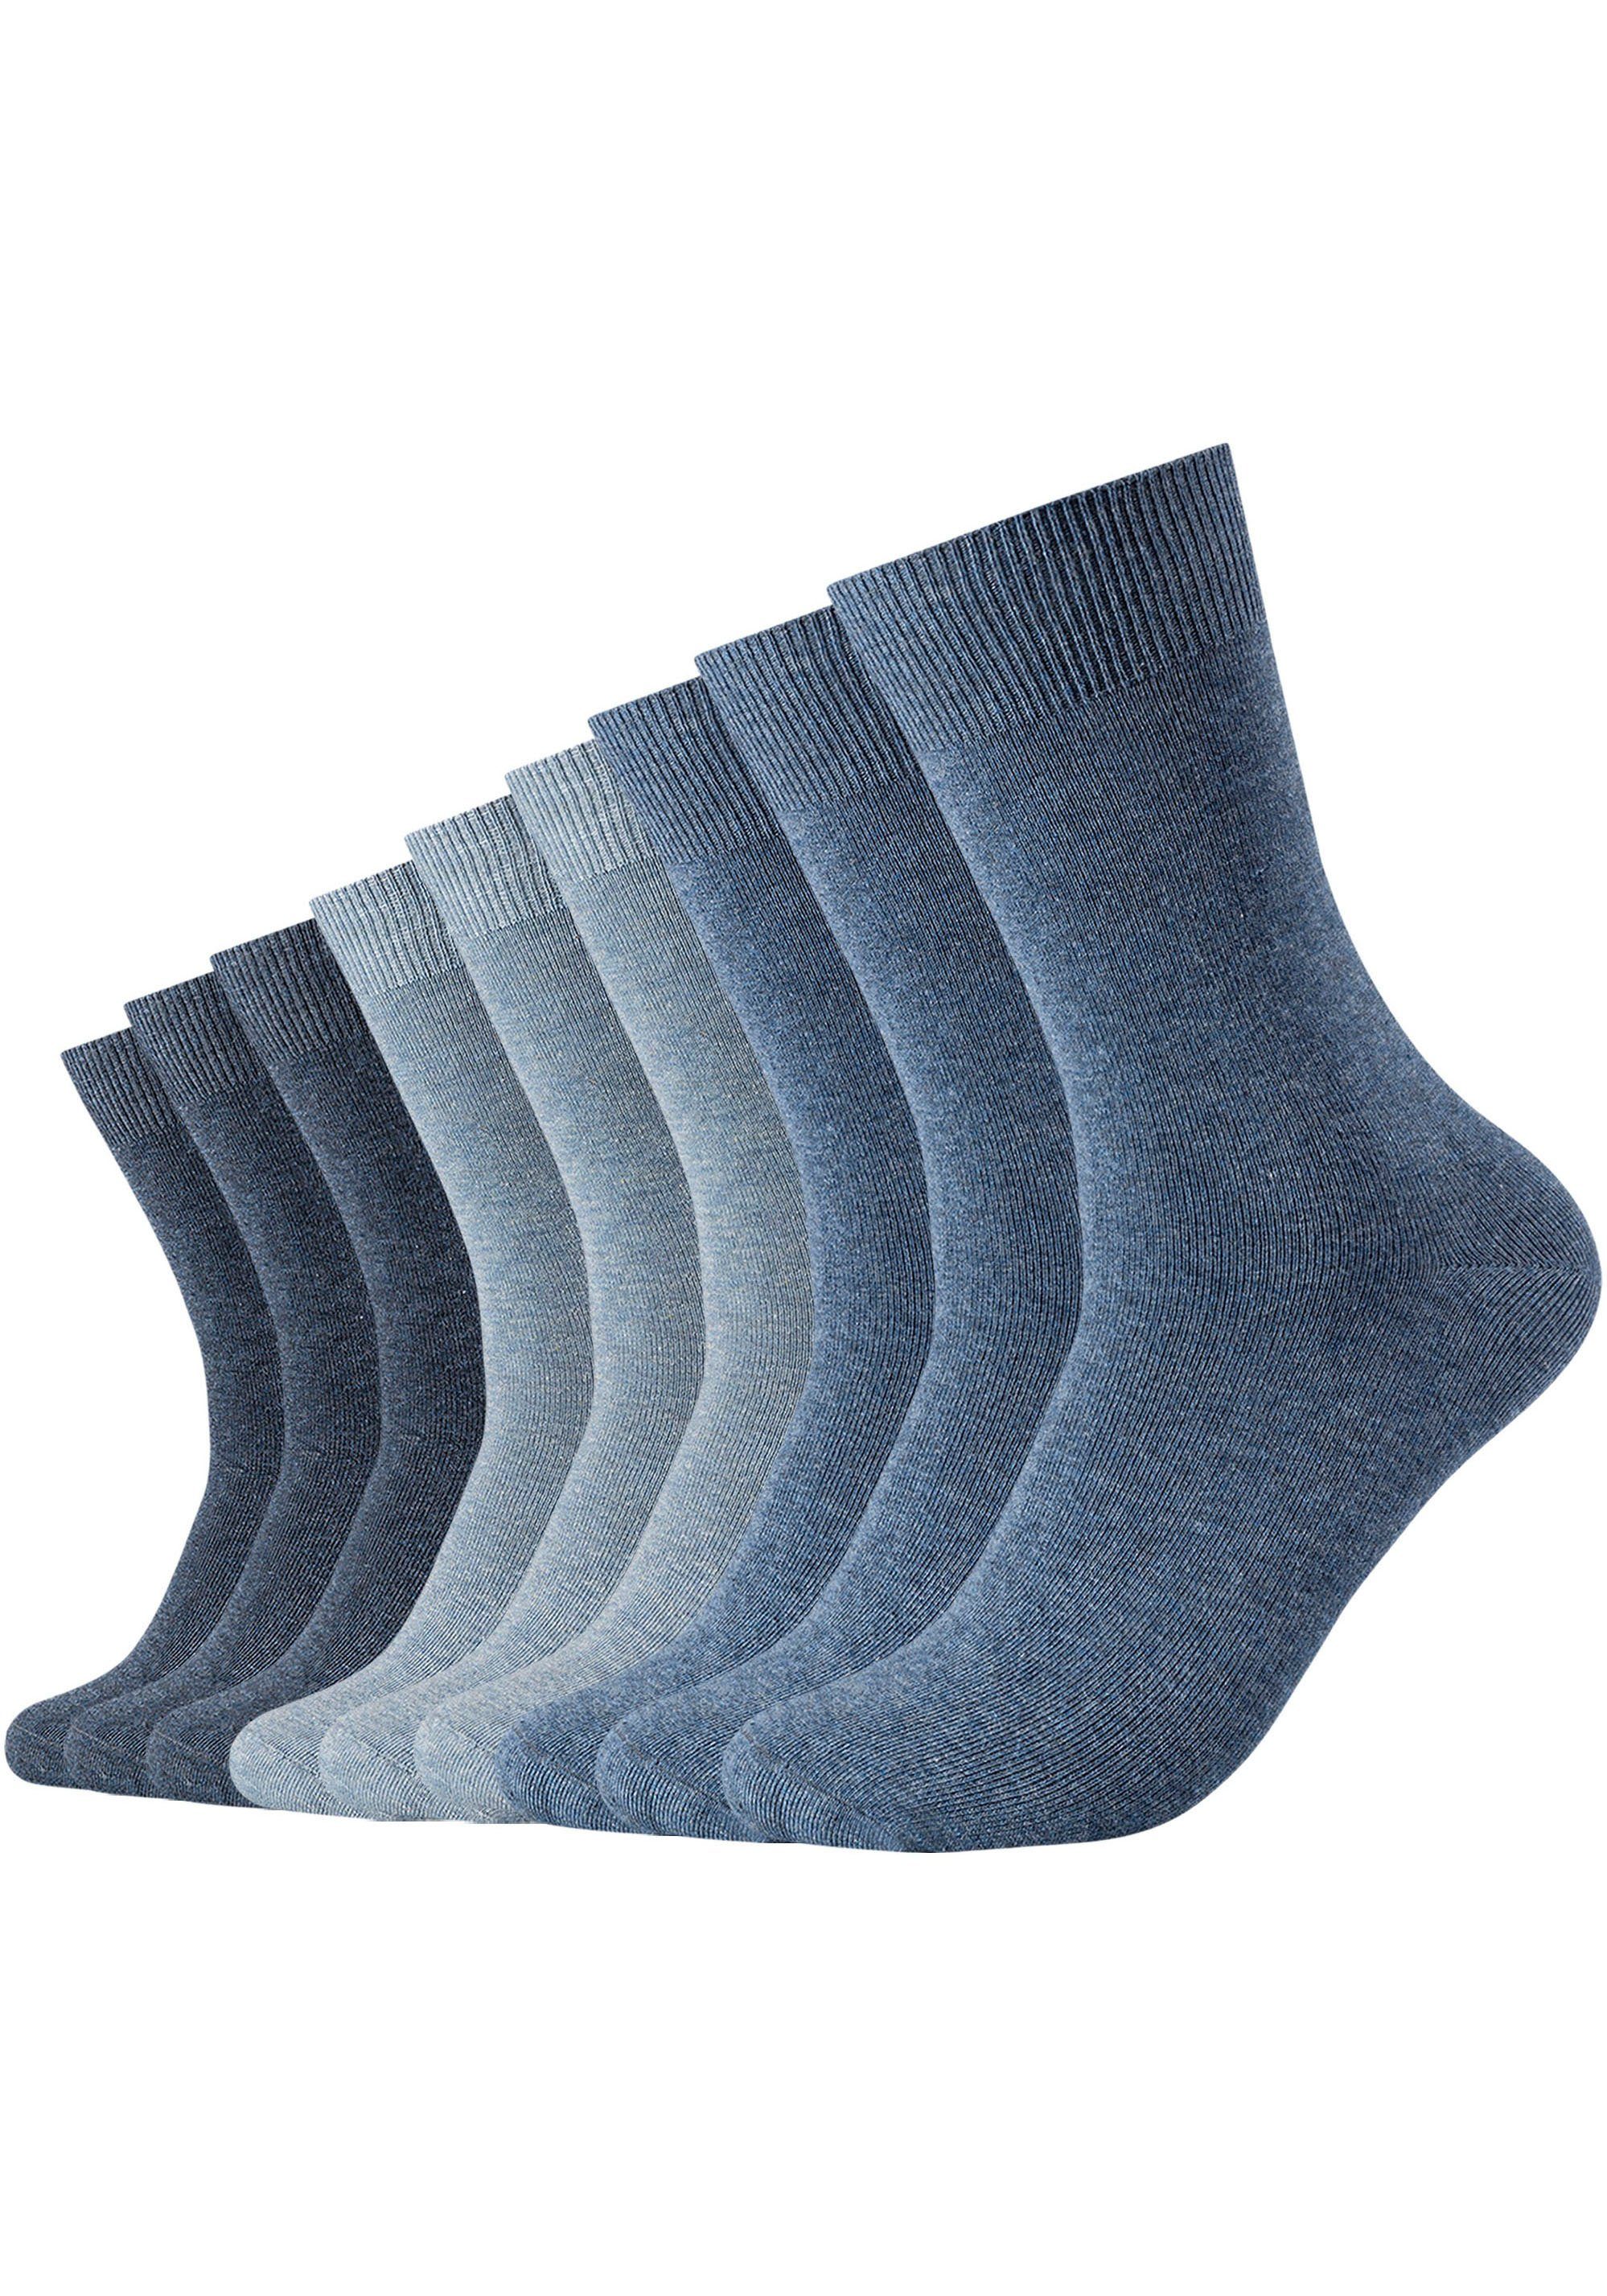 niedrige Langlebig: Socken Schonwäsche (Packung, 40 Fersen- und °, 9-Paar) Nicht verstärkter Temperatur, Trocknen Bügeln Zehenbereich, Camano